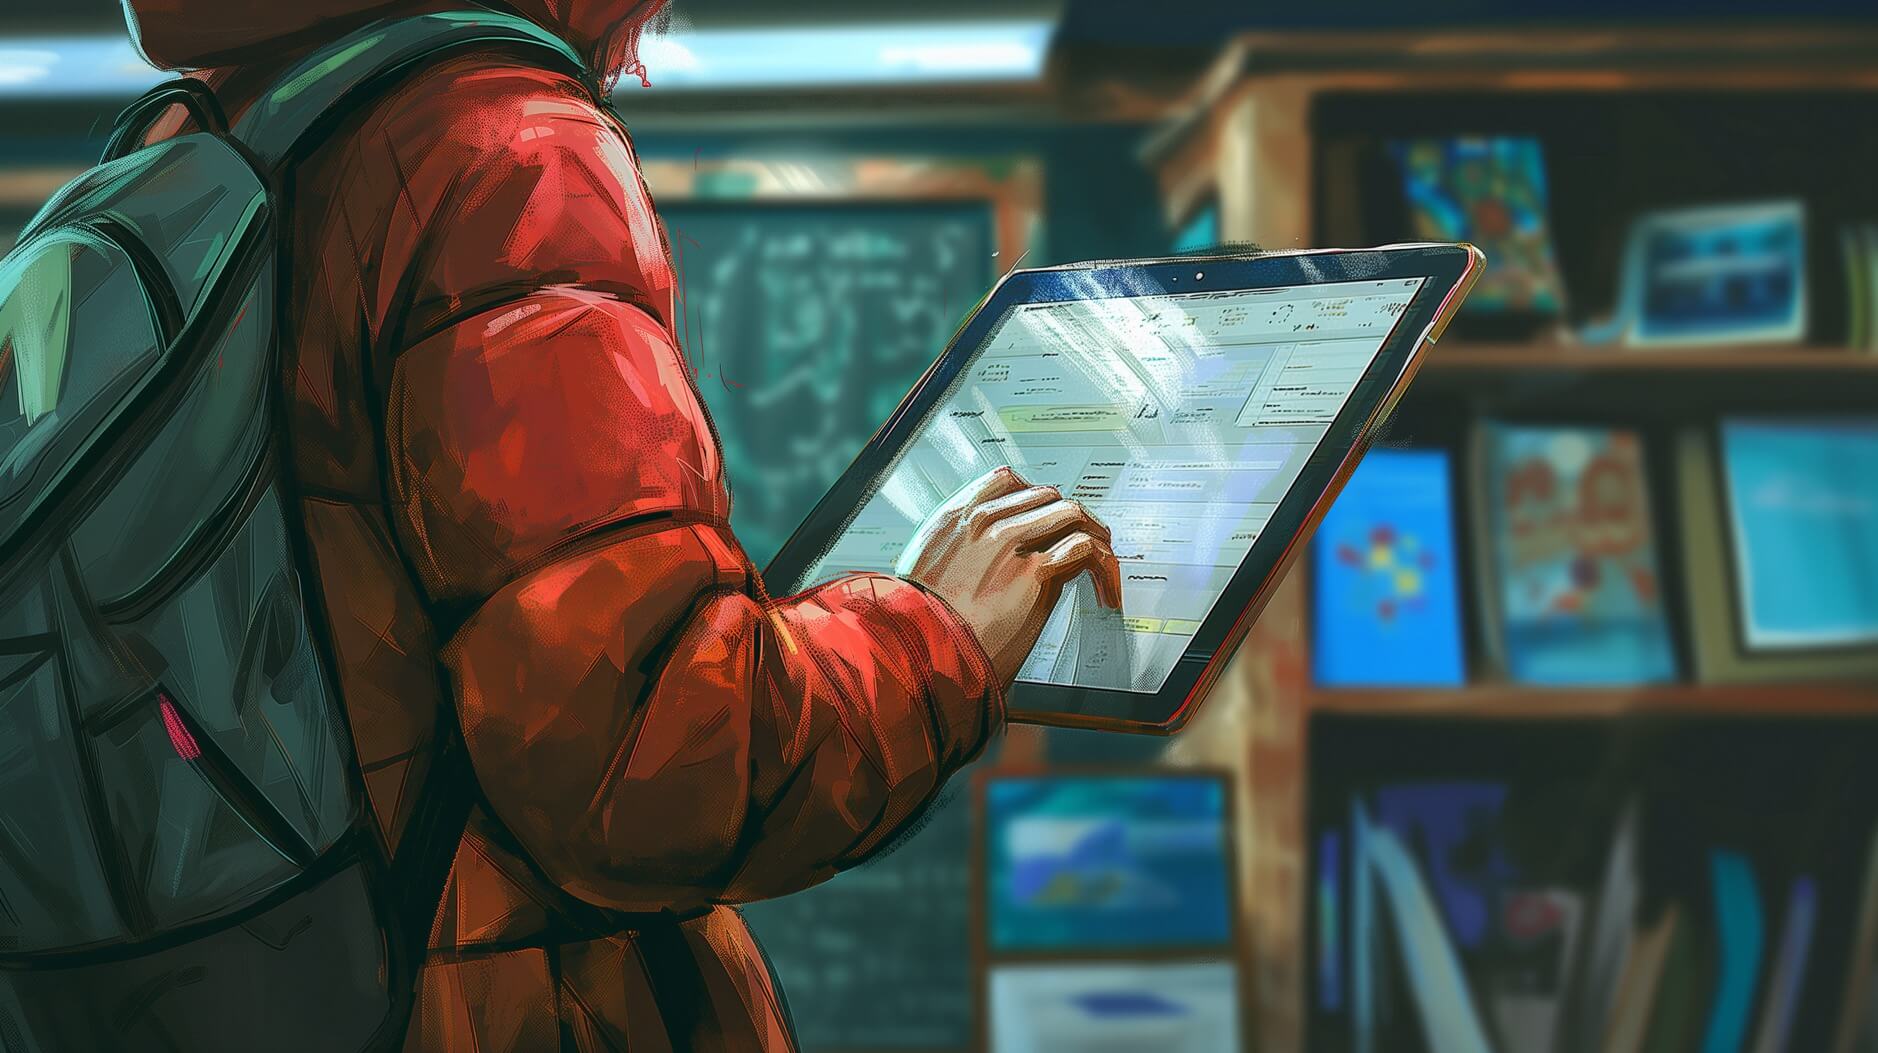 Die Abbildung zeigt eine Person in einer roten Jacke und einem Rucksack, die vor einem Bücherregal steht und einen Tablet-Computer in der Hand hält. Die Person scheint das Tablet zu verwenden, vermutlich für Forschungs- oder Studienzwecke, in einer Innenumgebung, die an eine Bibliothek oder einen Klassenraum erinnert.